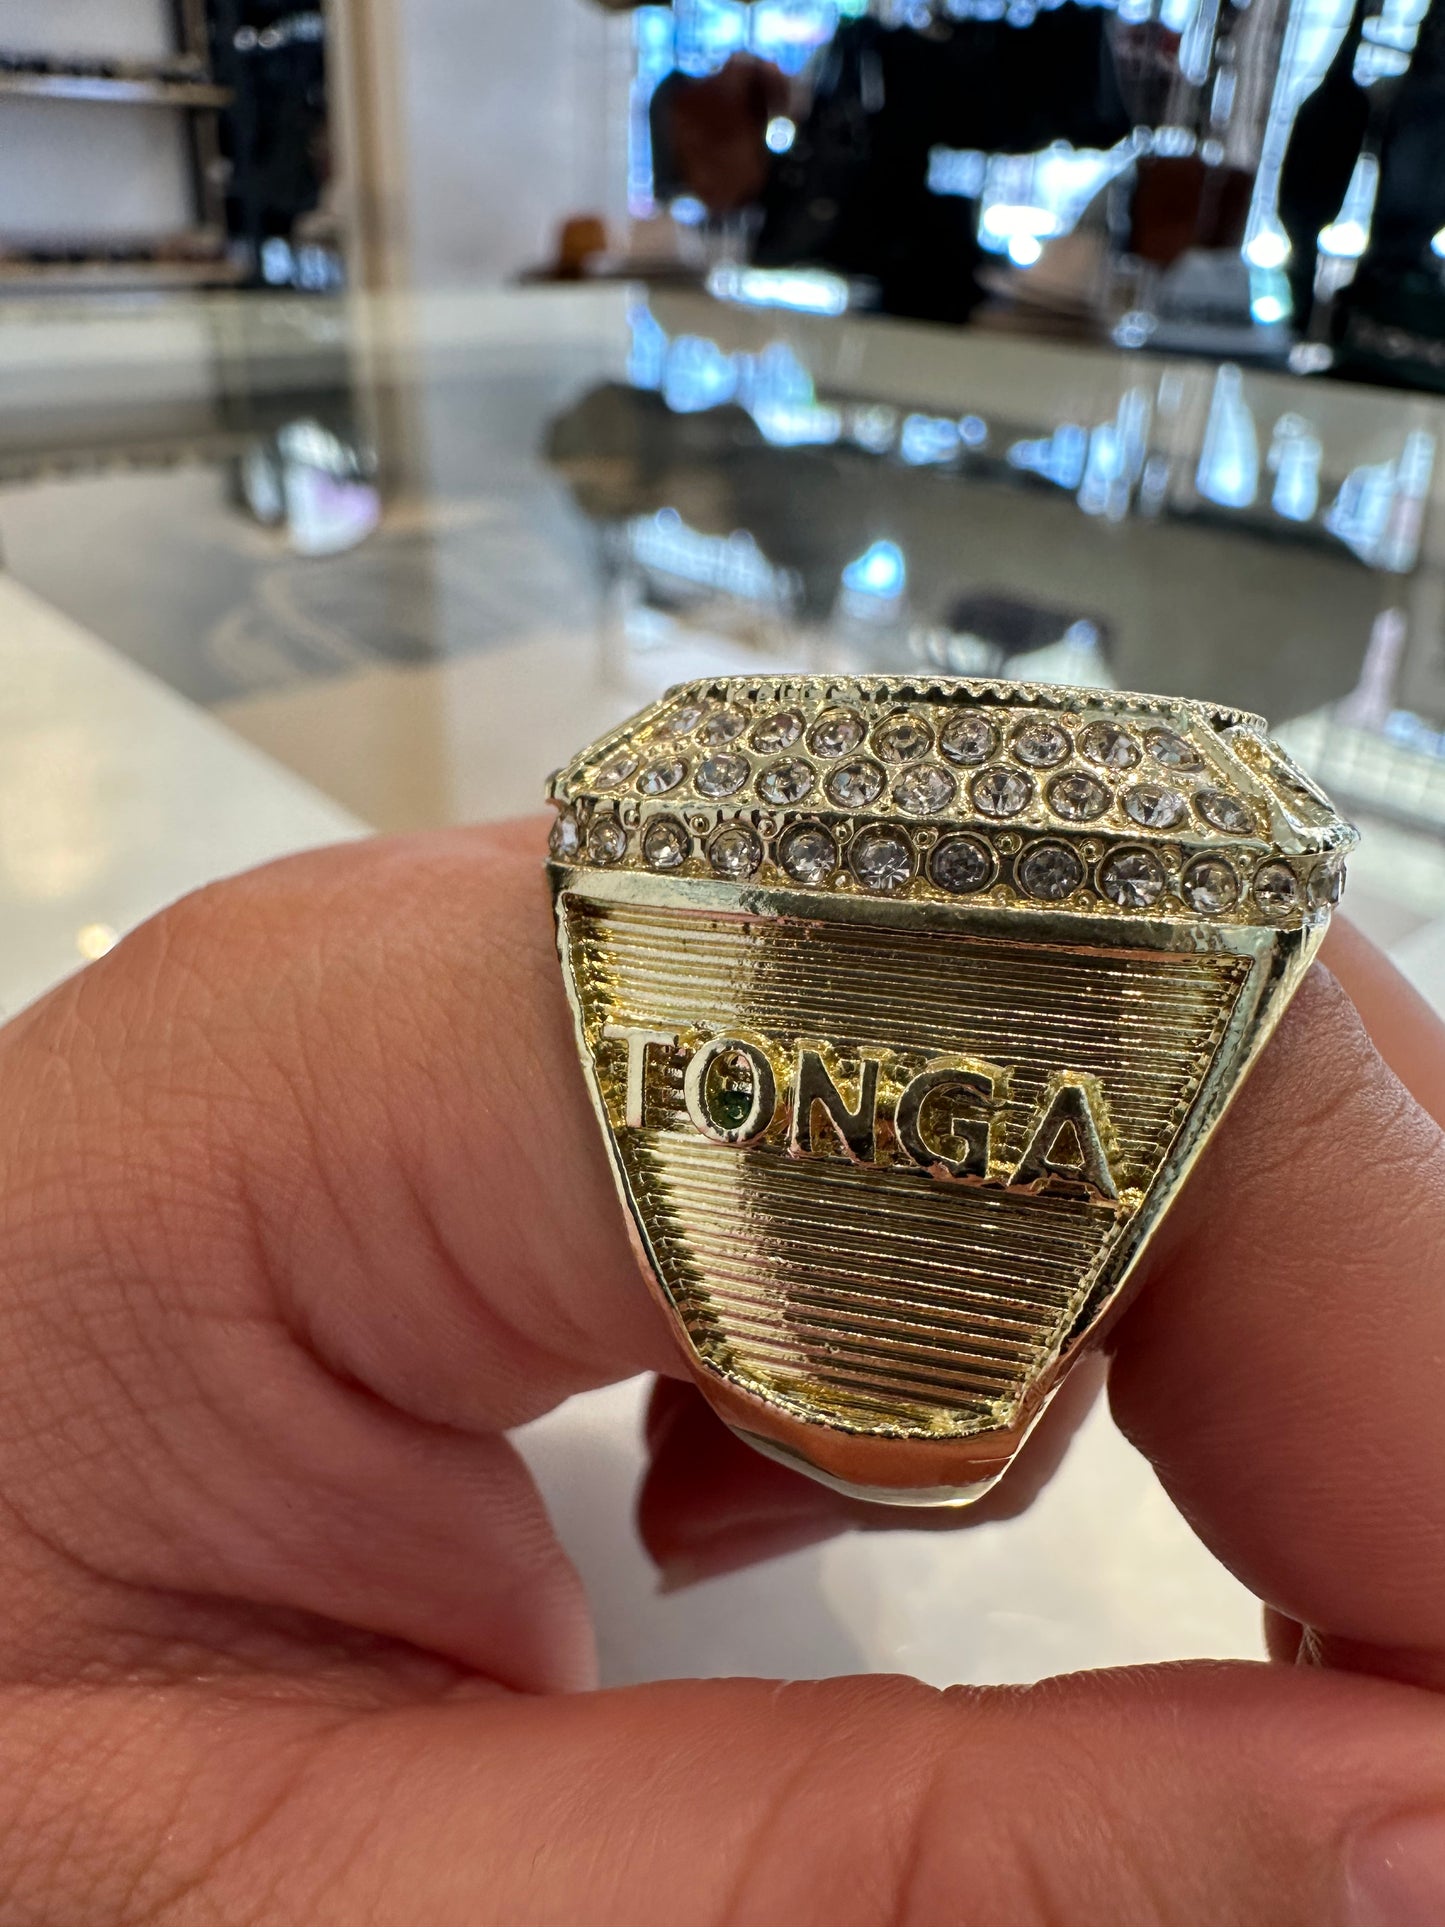 Tongan Celebratory Ring